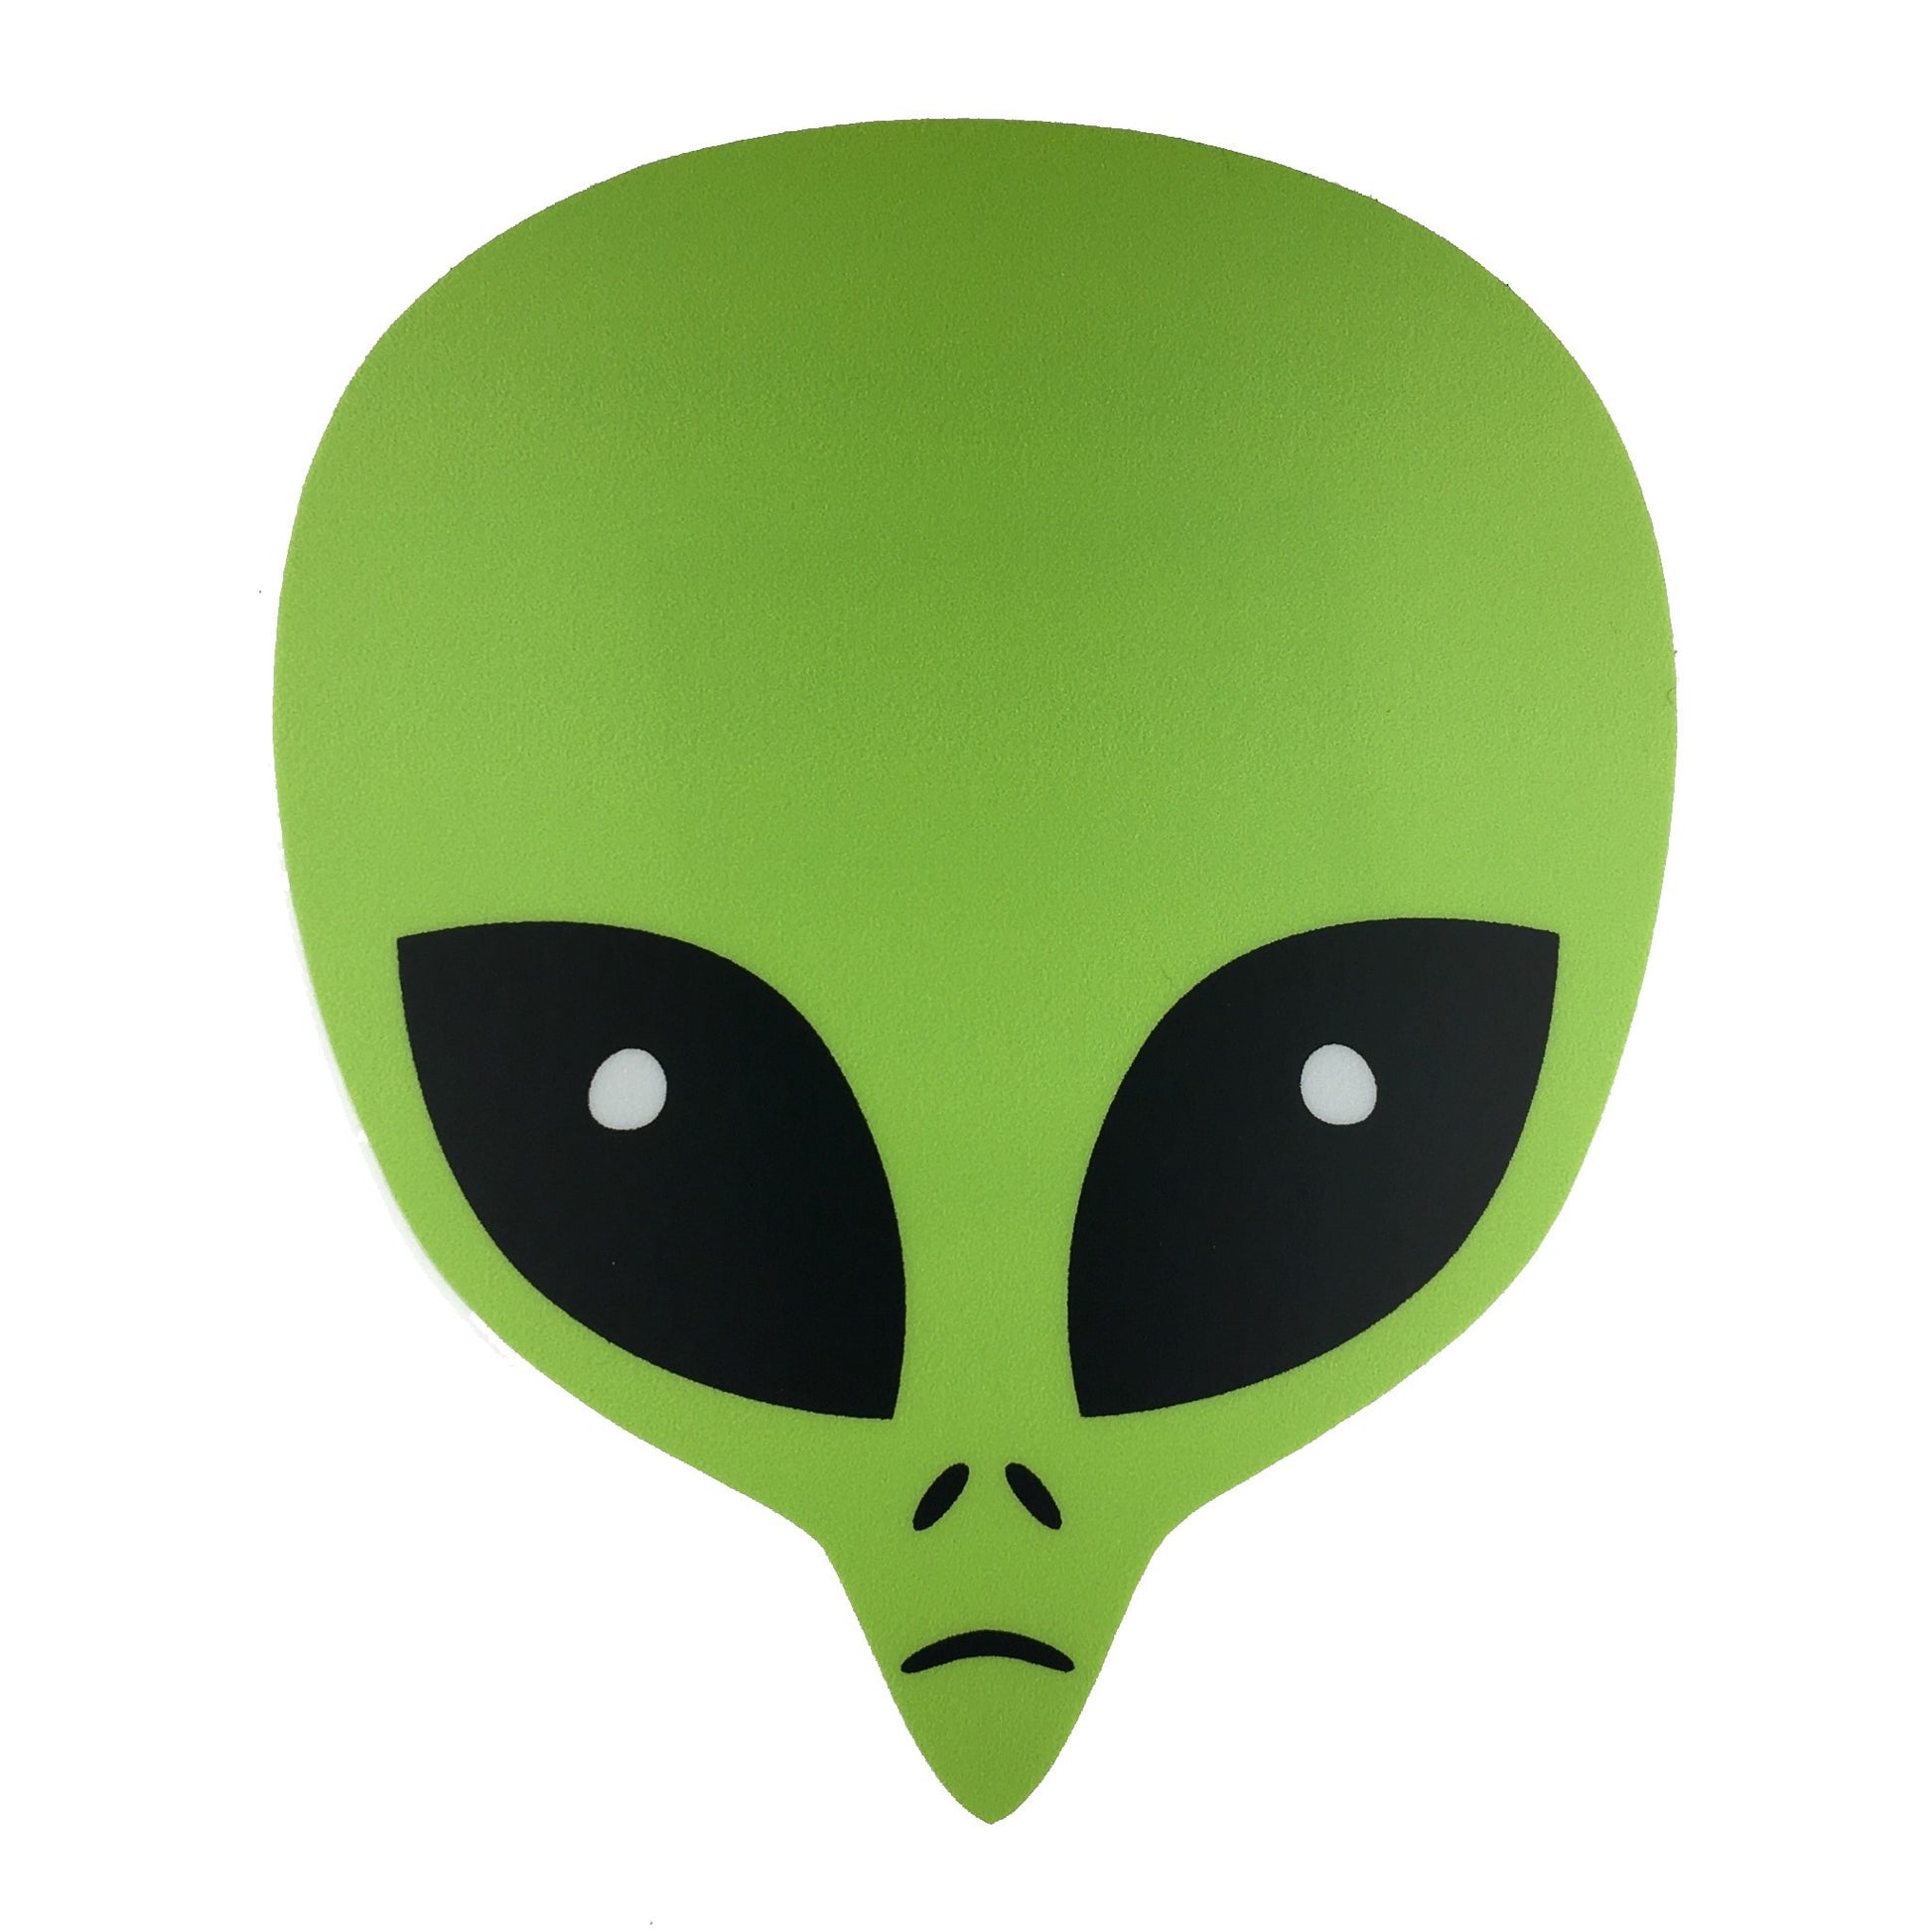 Green alien head vinyl sticker by Monsterologist